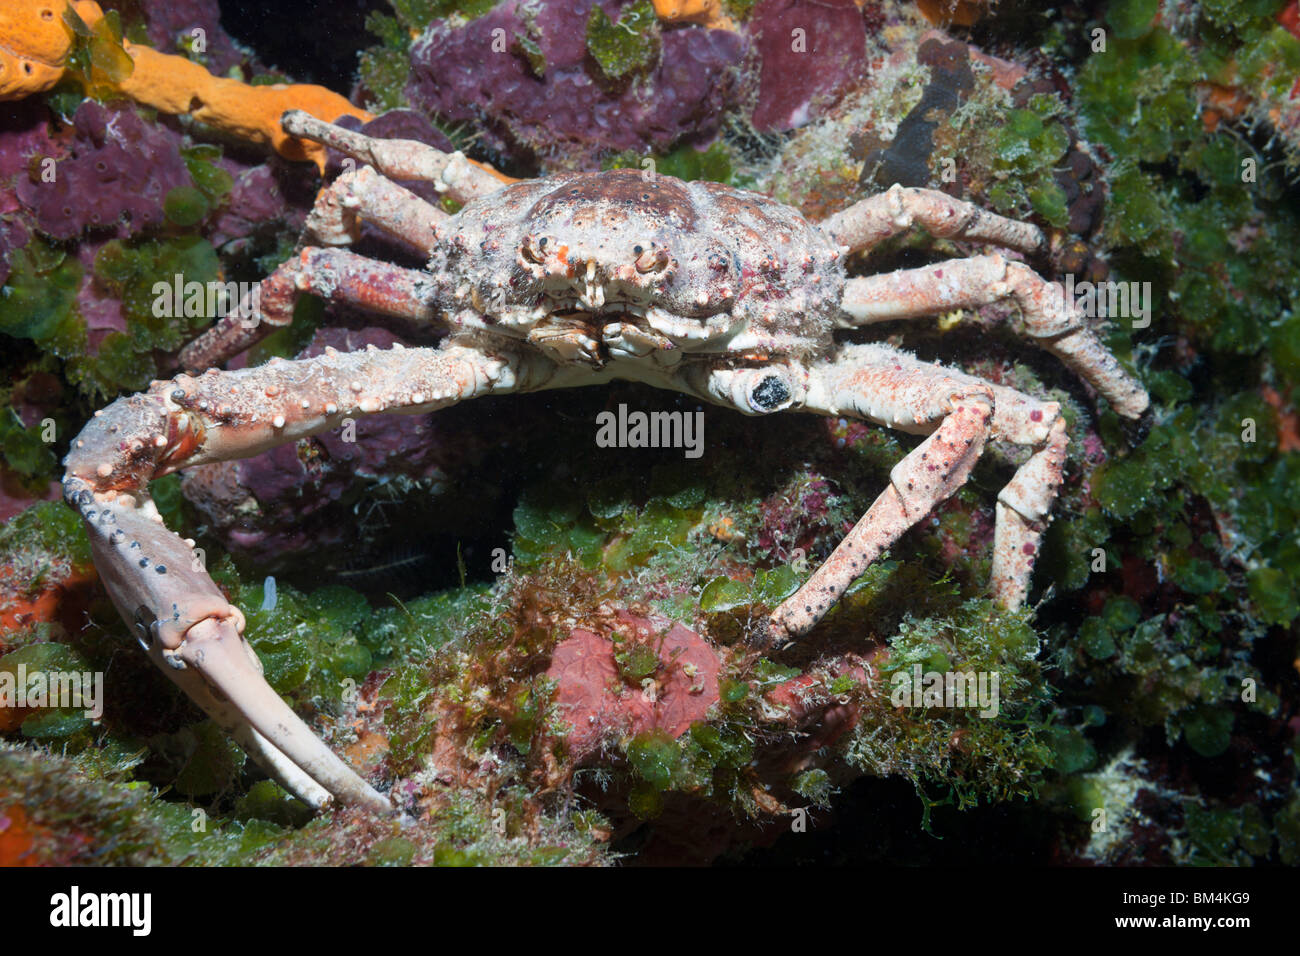 Araignée de mer de corail, Mithrax spinosissimus, Cozumel, Mexique, la mer des Caraïbes Banque D'Images